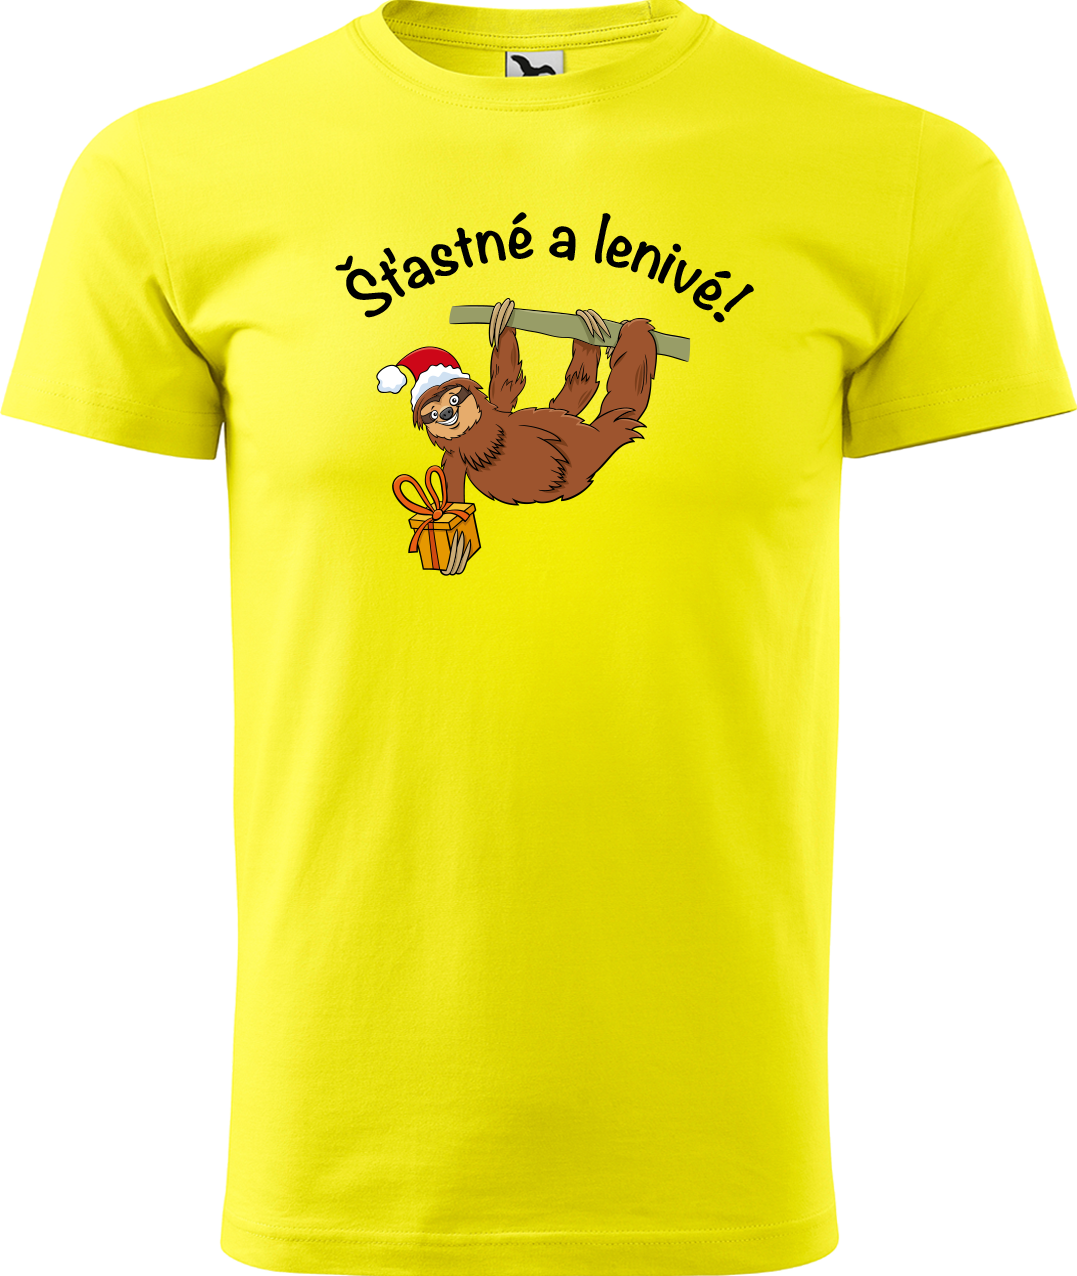 Pánské vánoční tričko - Šťastné a lenivé! Velikost: L, Barva: Žlutá (04)